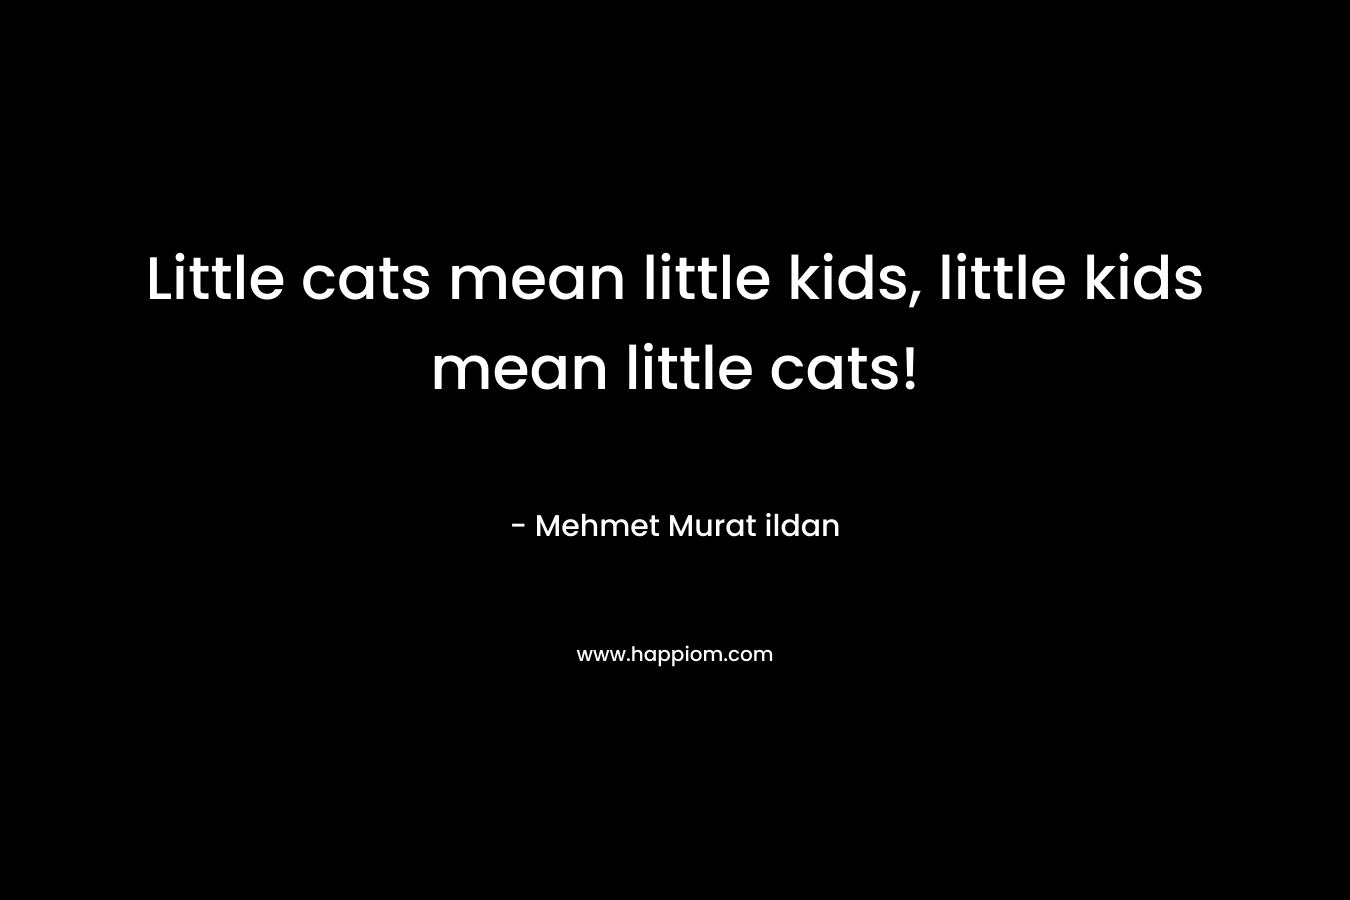 Little cats mean little kids, little kids mean little cats! – Mehmet Murat ildan